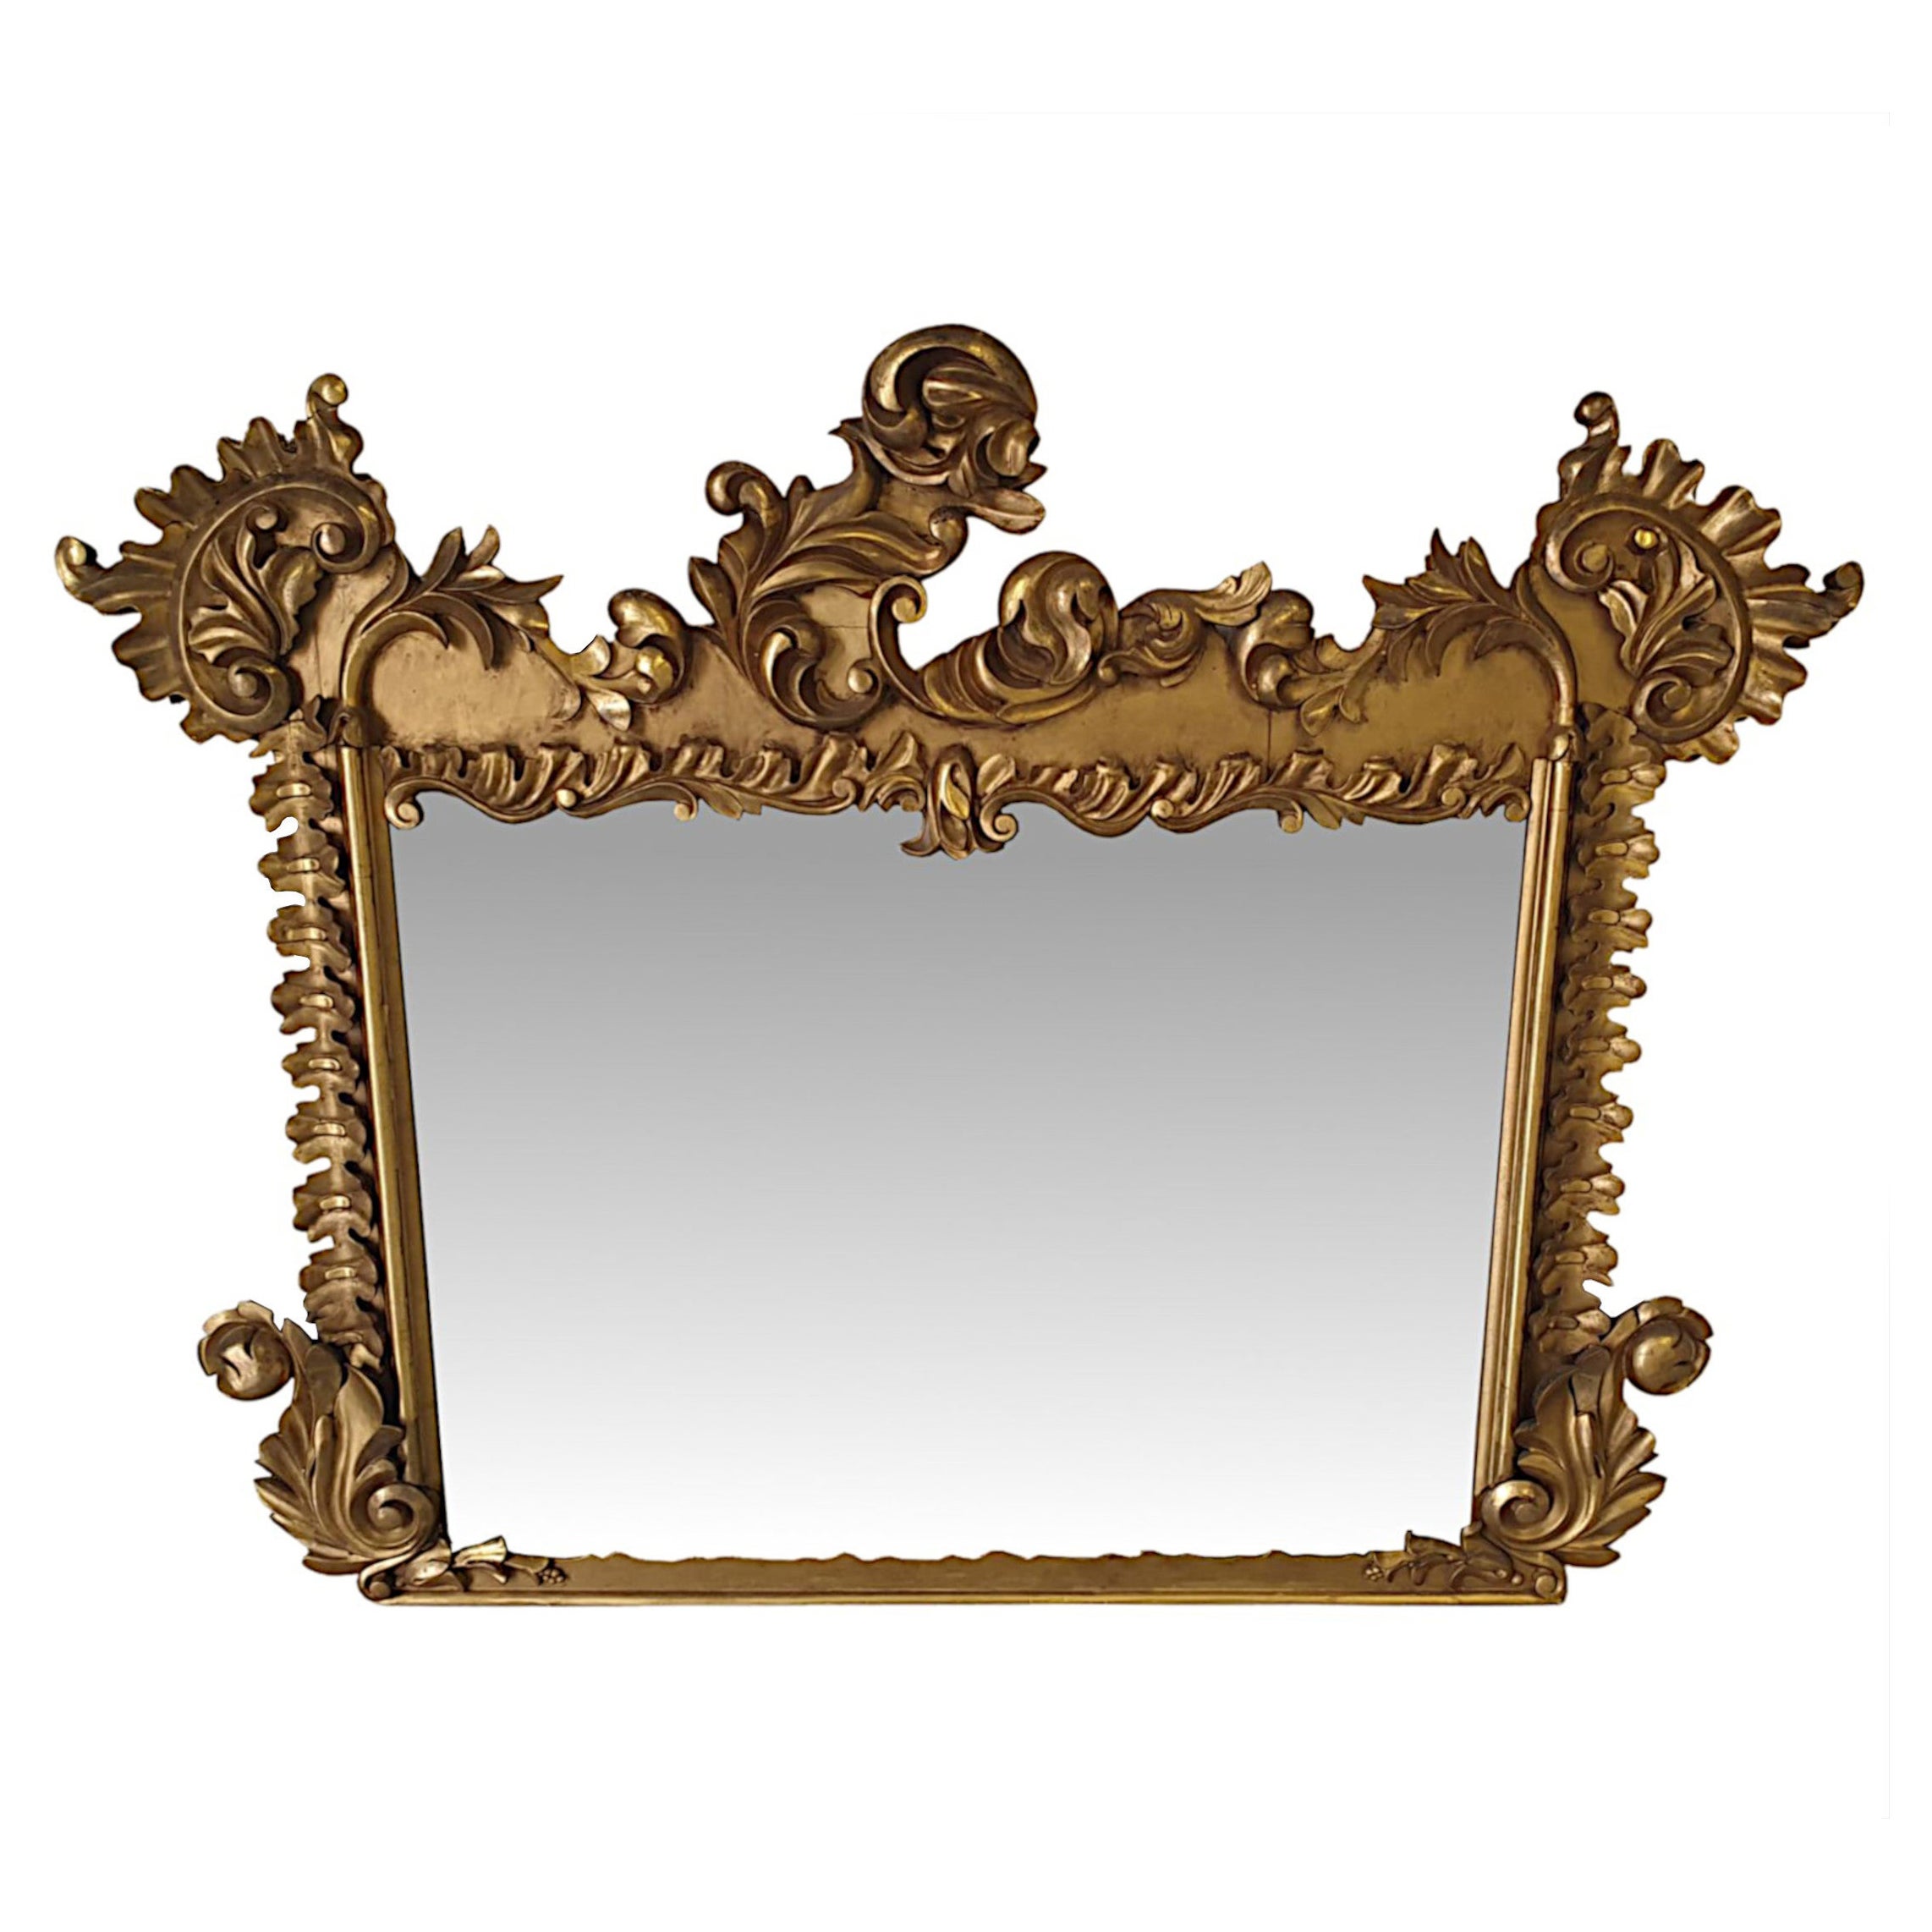 Très beau miroir à trumeau en bois doré irlandais William IV du début du 19ème siècle